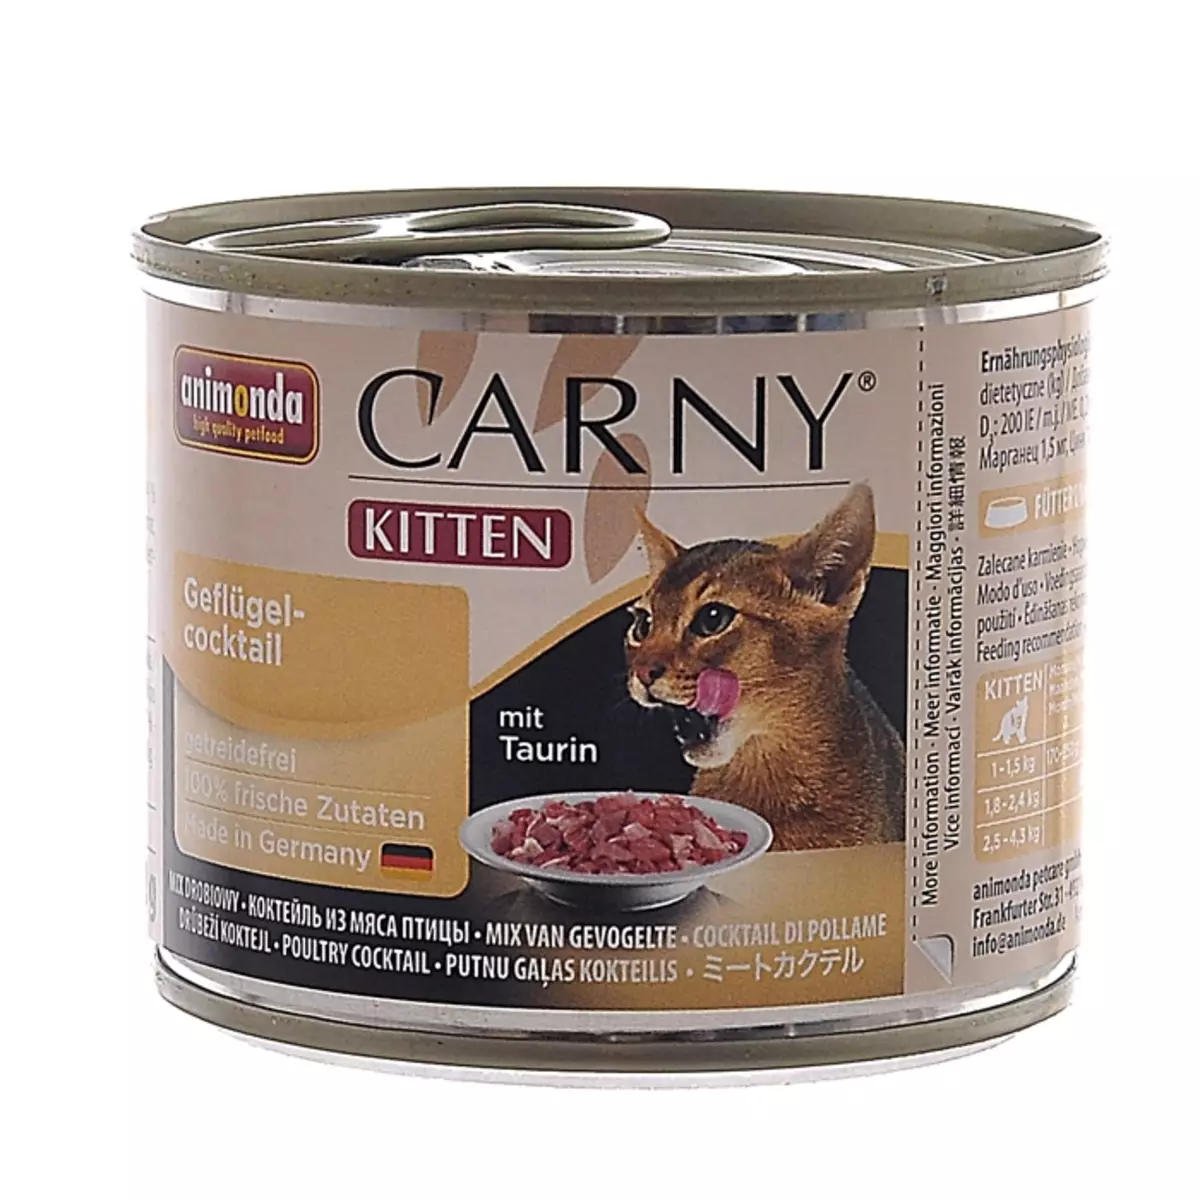 Υγρή τροφοδοσία για τις γάτες Premium: βαθμολογία της καλύτερης υγρής τροφοδοσίας για τα γατάκια, καλό μαλακό φαγητό αιλουροειδών 11830_3